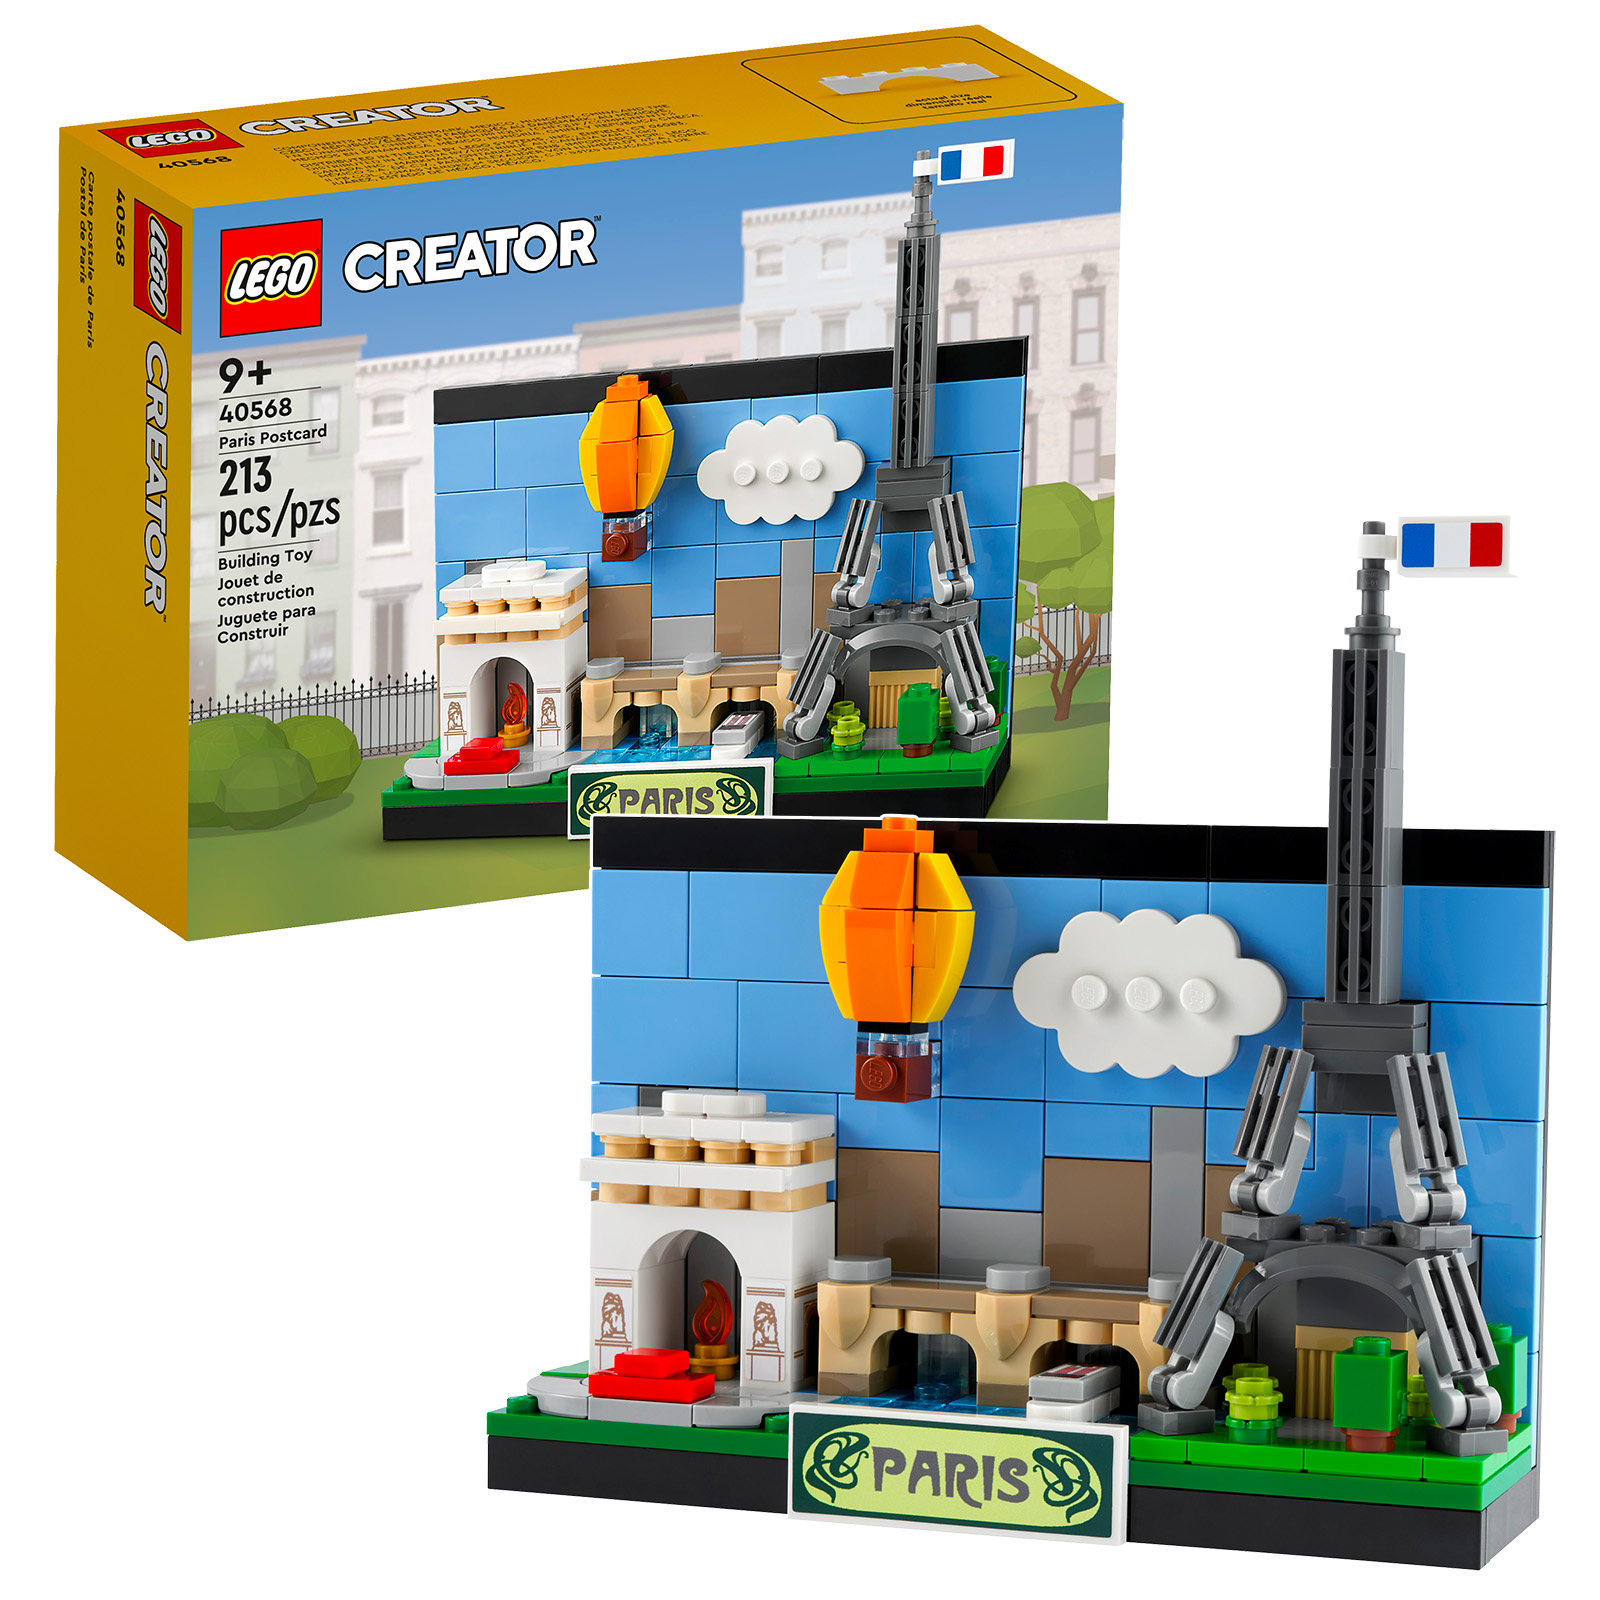 Új LEGO Creator 2022 kiadások: 40568 Paris Postcard és 40569 London Postcard